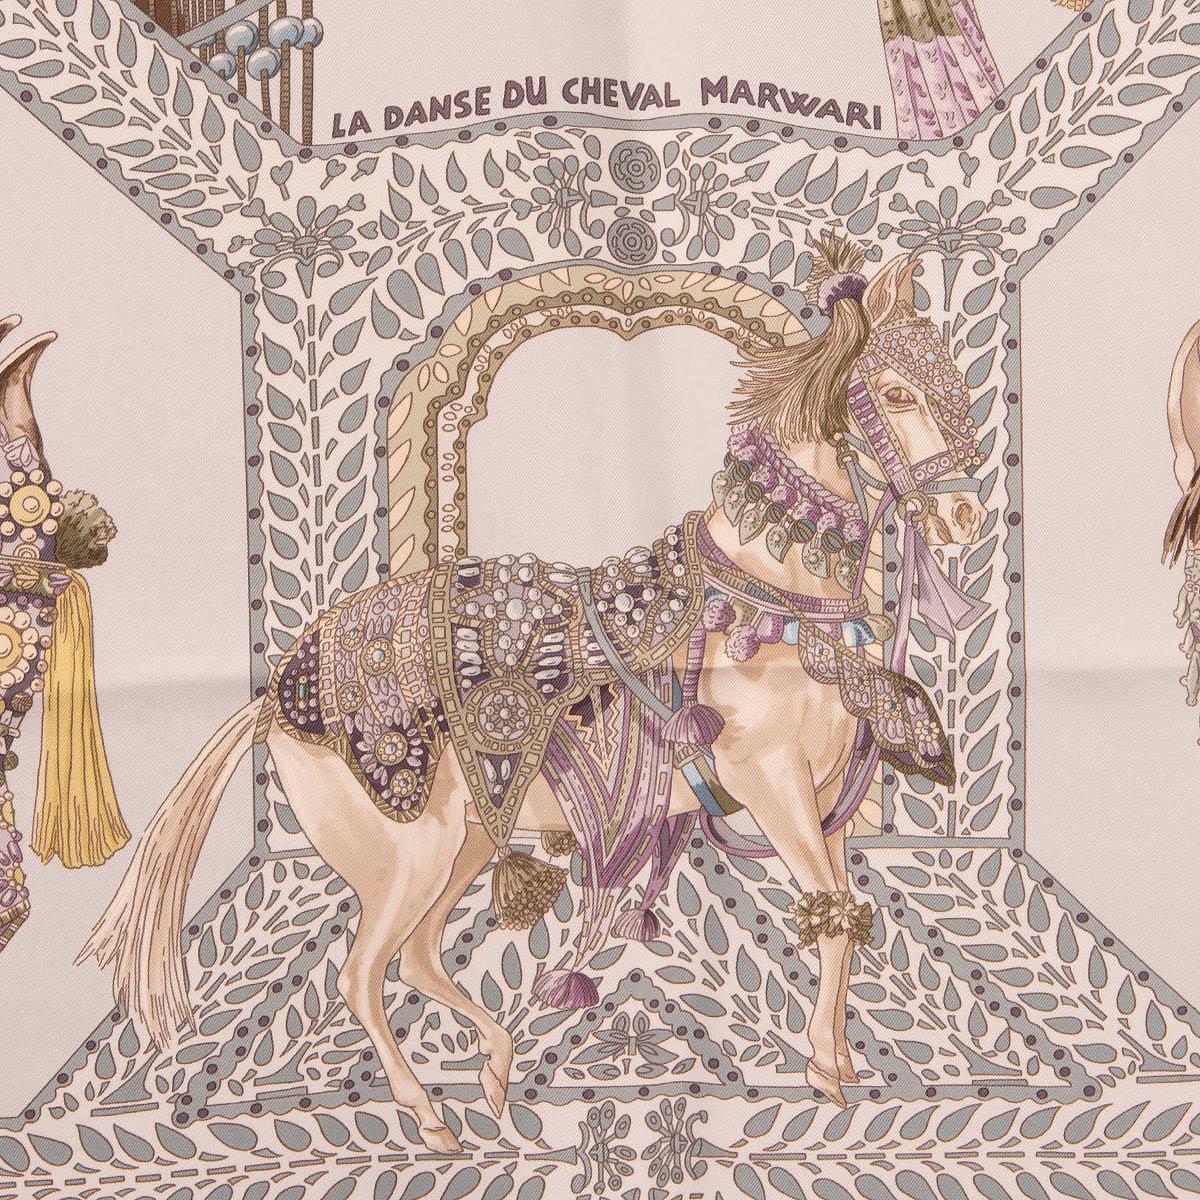 100 % authentique Hermès 'La Danse du Cheval Marwari 90' foulard par Annie Faivre en twill de soie gris clair (100 %) avec détails kaki, lilas, turquoise et marron. A été porté et est en excellent état.

Mesures
Largeur	90cm (35.1in)
Longueur	90cm